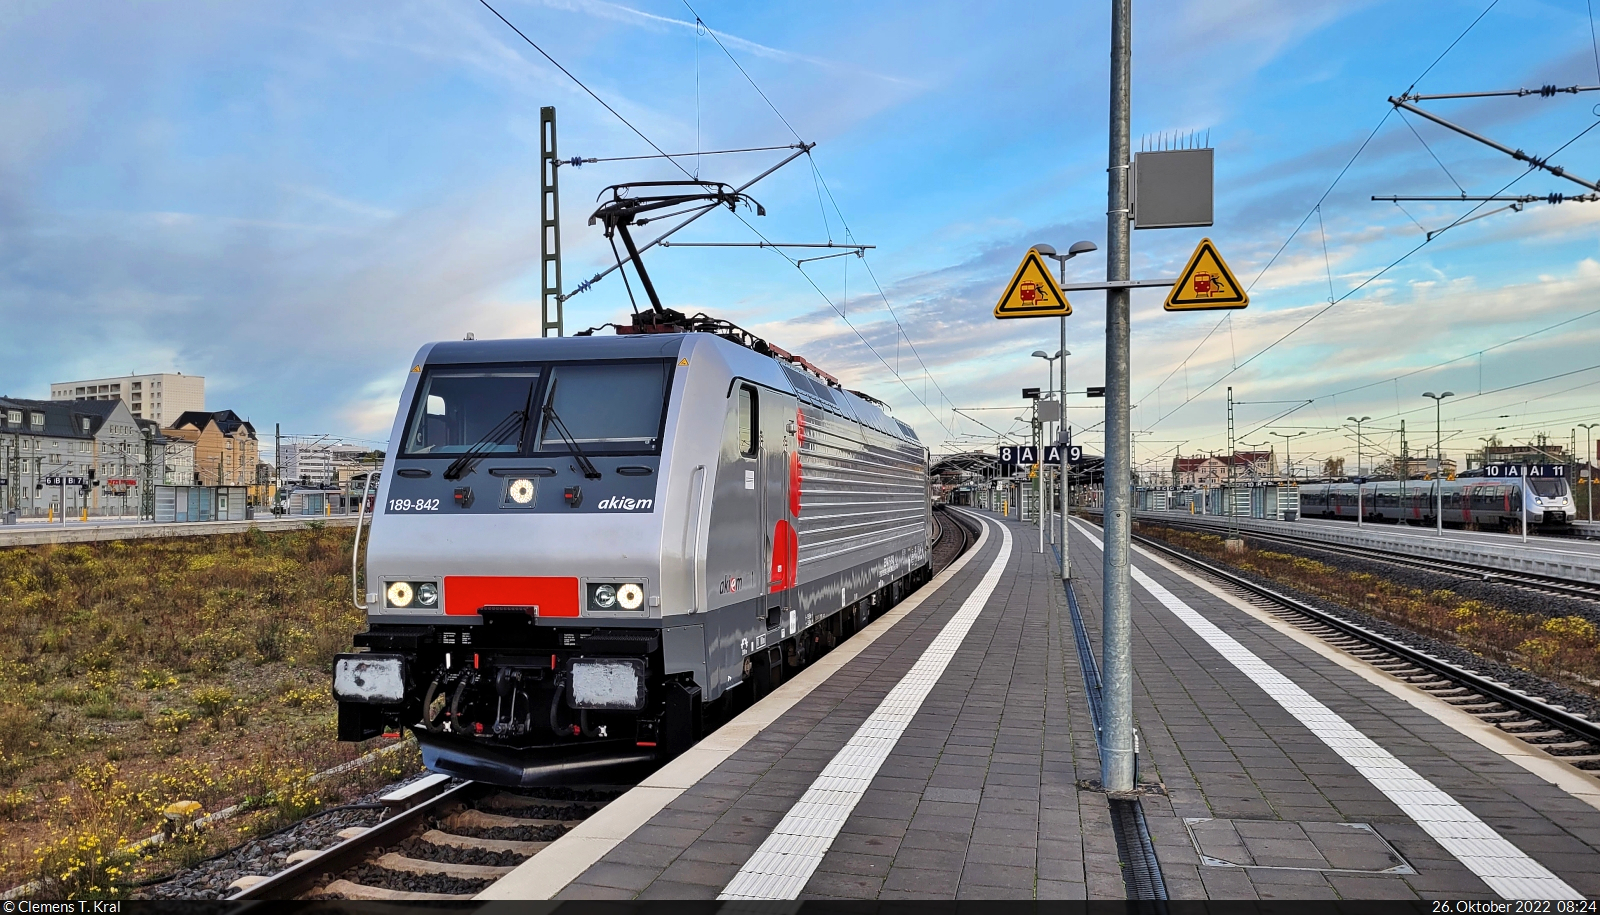 Auf ihrer Tfzf in südlicher Richtung muss 189 842-8 (Siemens ES64F4-842) am Signal von Gleis 8 in Halle(Saale)Hbf anhalten.

🧰 Akiem S.A.S., aktueller Mieter unbekannt | ex Mitsui Rail Capital Europe GmbH (MRCE)
🕓 26.10.2022 | 8:24 Uhr